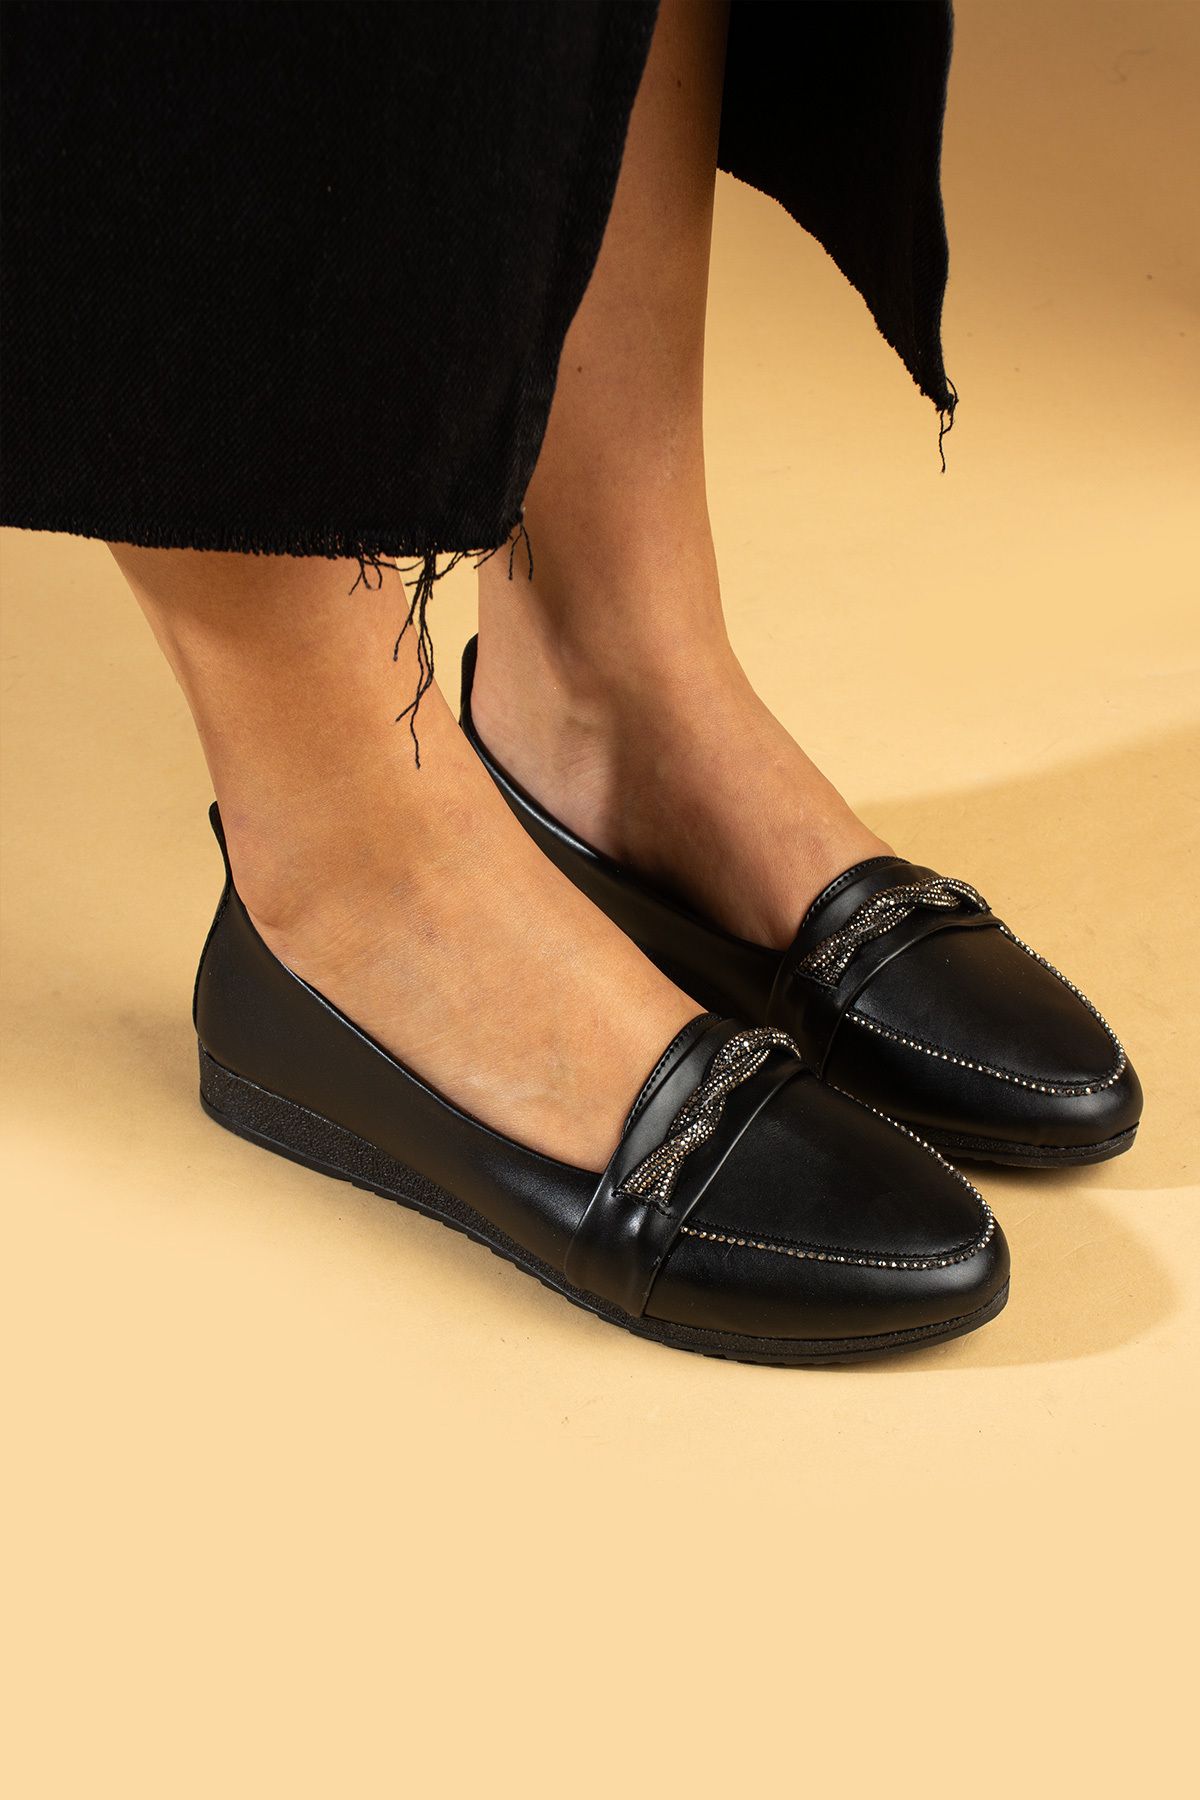 Pembe Potin Kadın Babet Siyah Taş Detaylı Hafif Rahat Taban Şık Günlük Ayakkabı